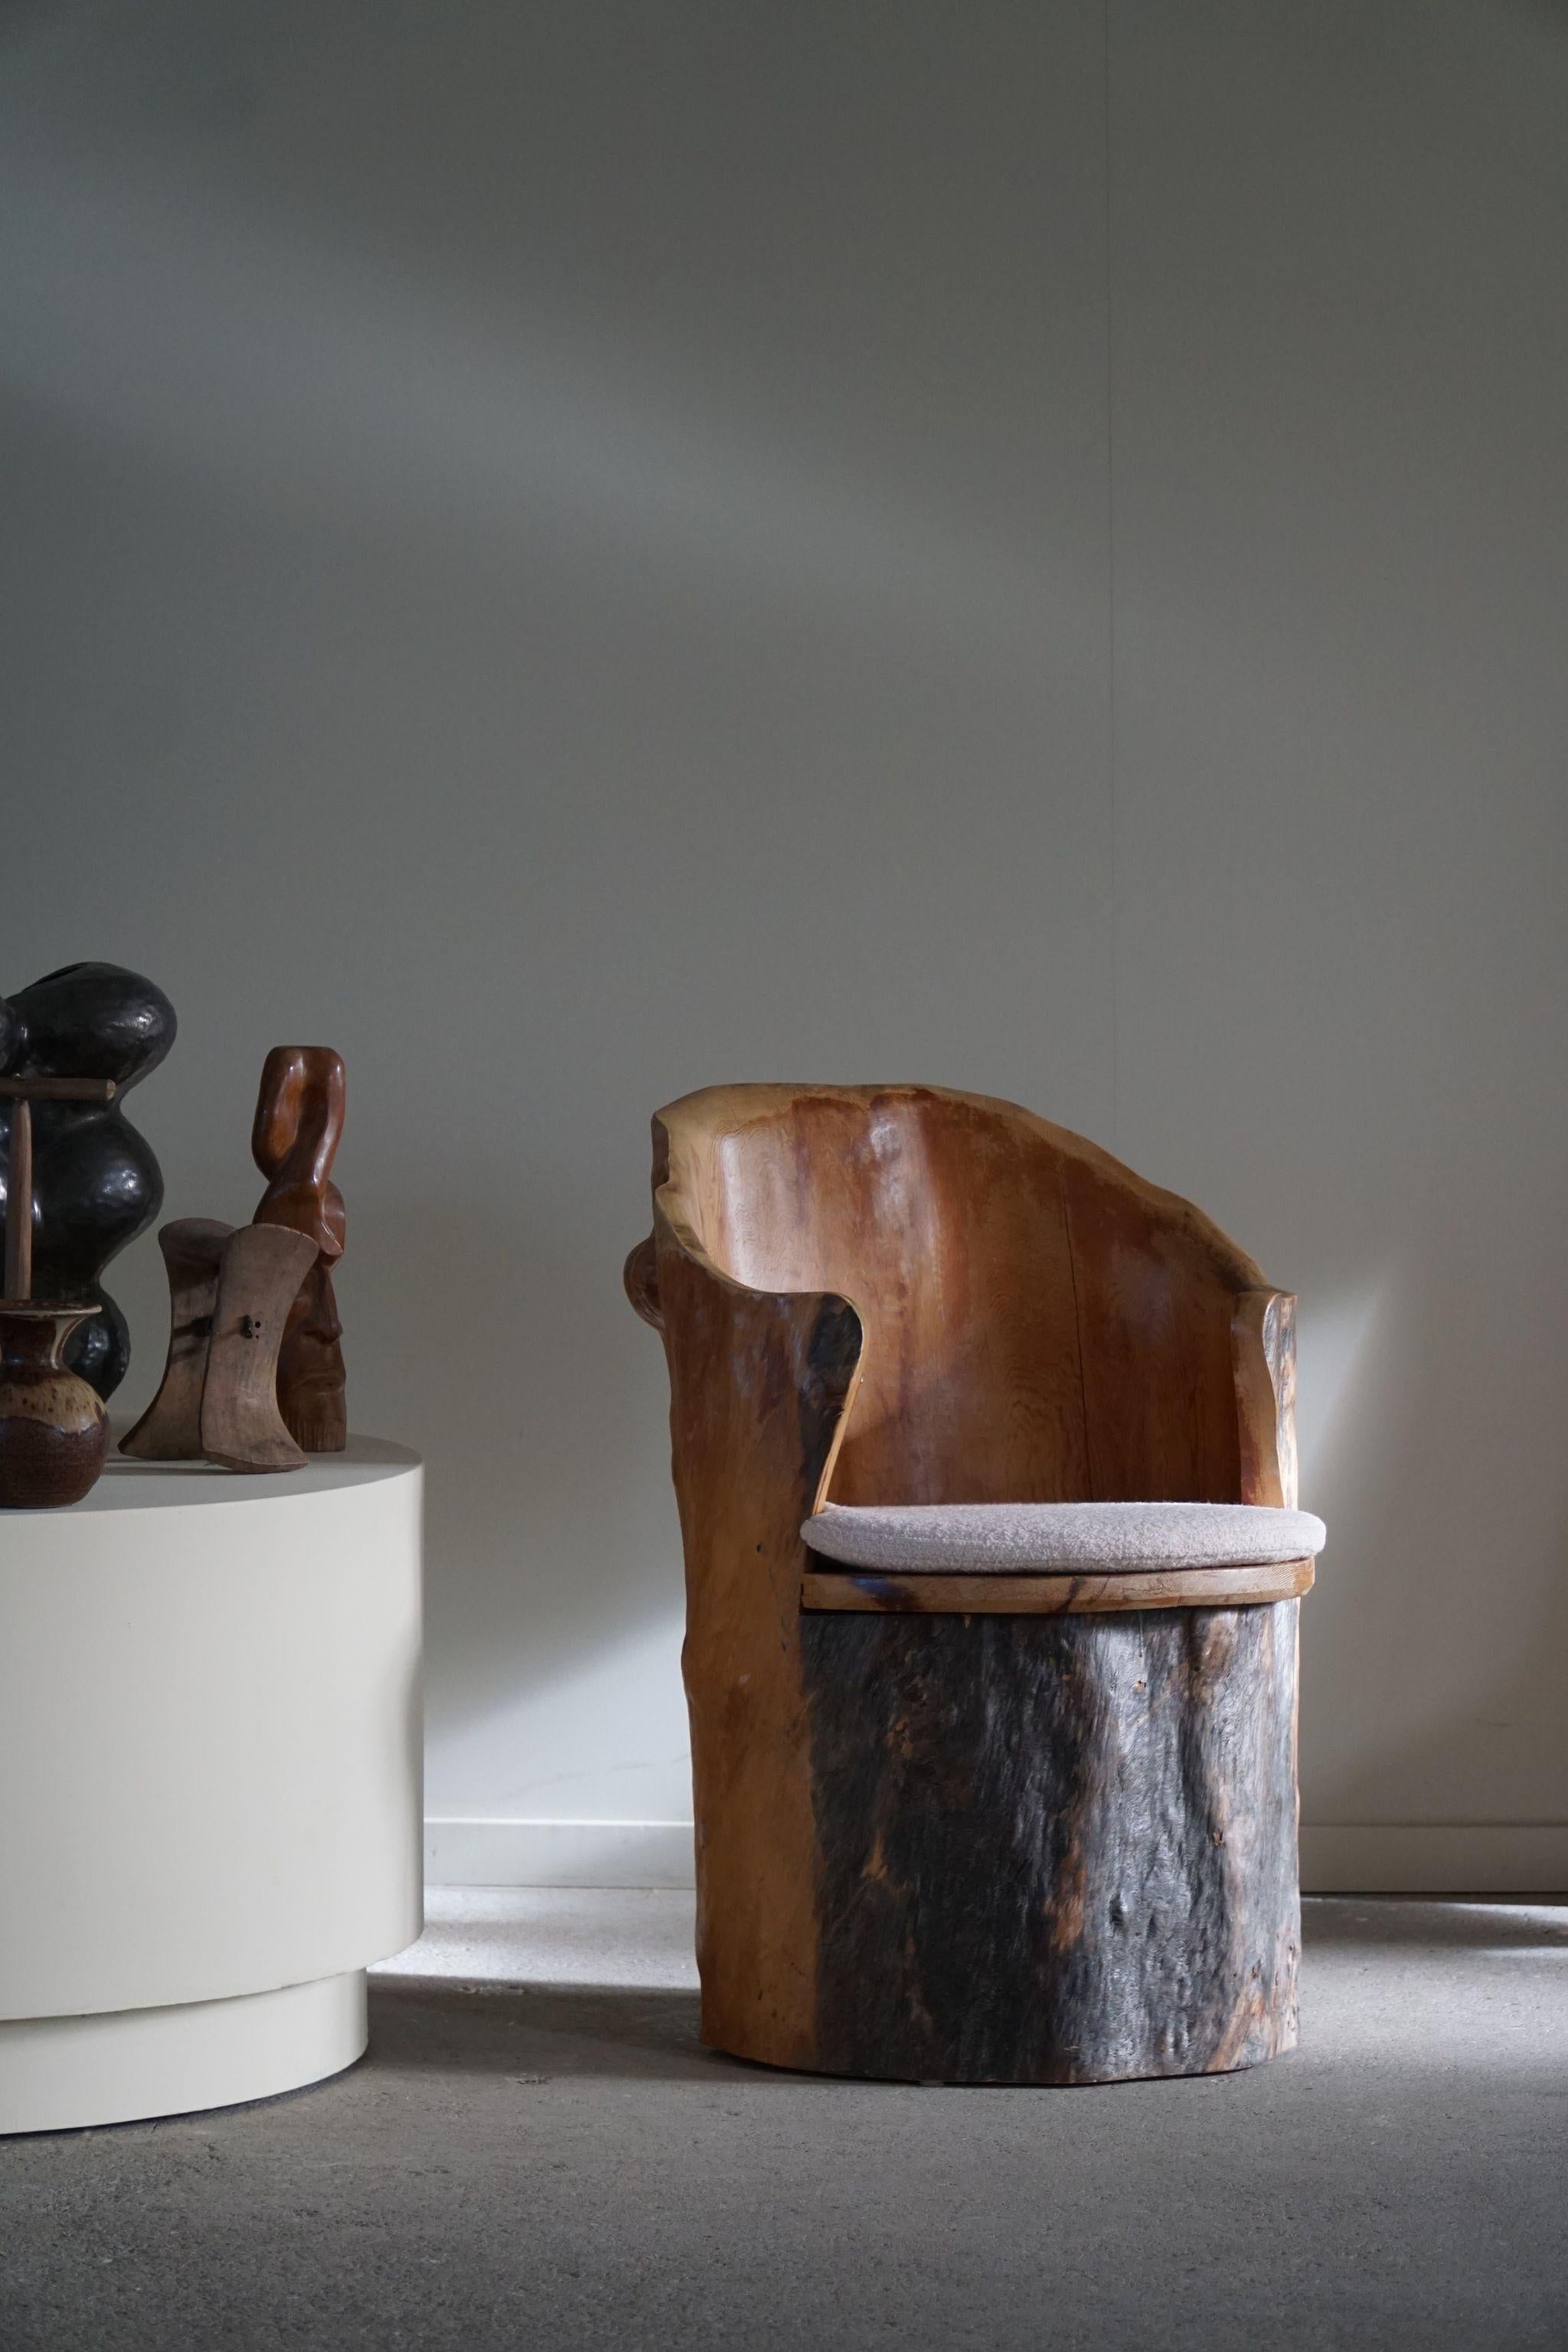 Ein sehr dekorativer und skulpturaler Stumpfstuhl aus massivem Kiefernholz. Handgeschnitzt von einem schwedischen Tischler in den 1970er Jahren. Schöne Holzmaserungen und Patina in diesem Vintage-Stück, ein wirklich authentisches brutalistisches